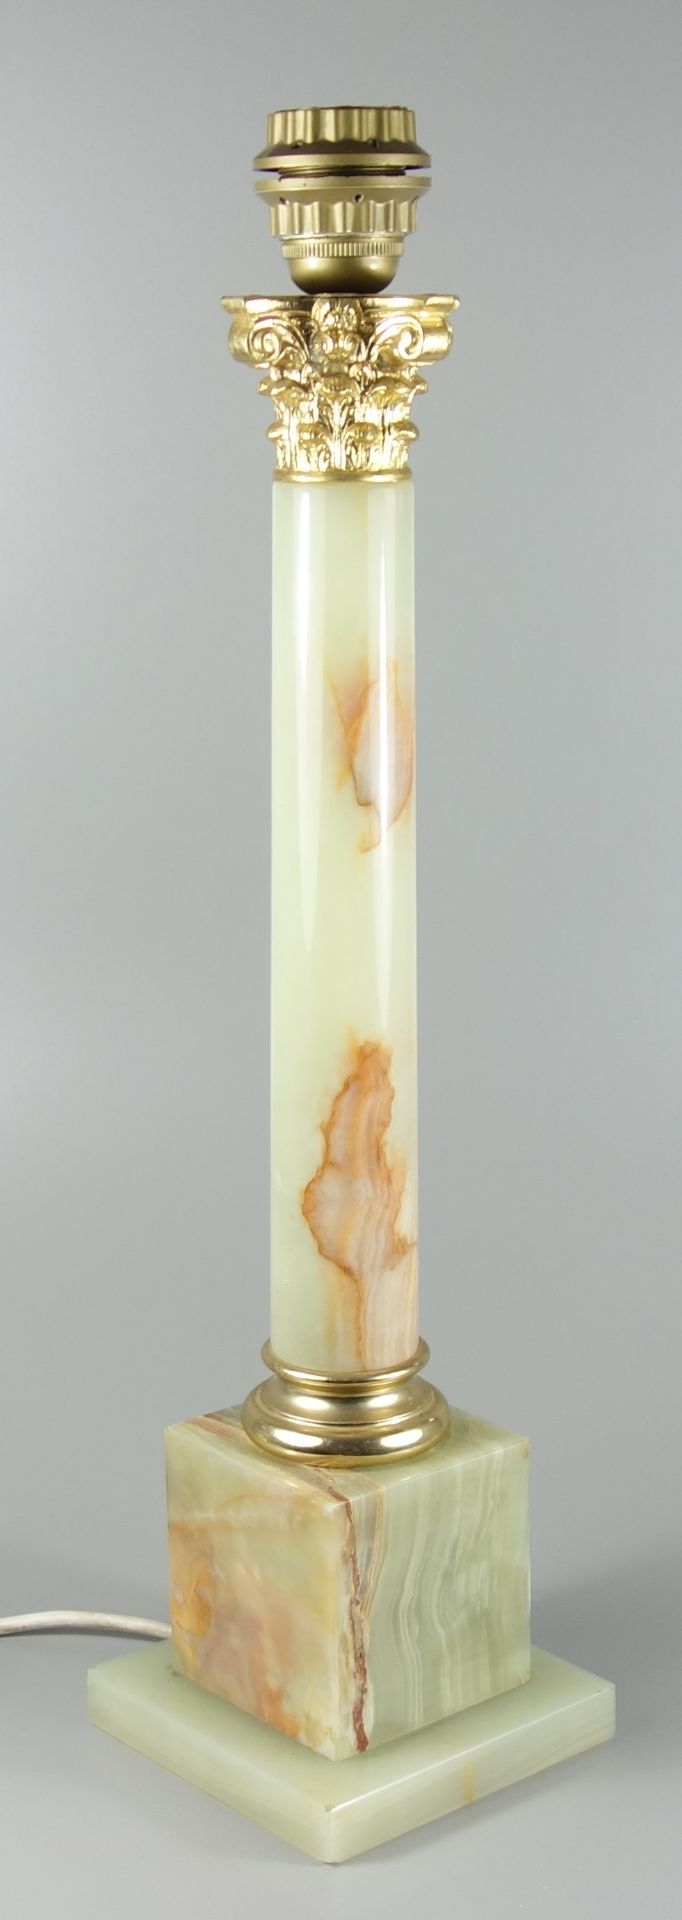 Onyx-Lampe in Form einer korinthischen Säule, 1970er Jahre, Gew.5,14kg, mit Metallmontierung, H. - Bild 2 aus 3